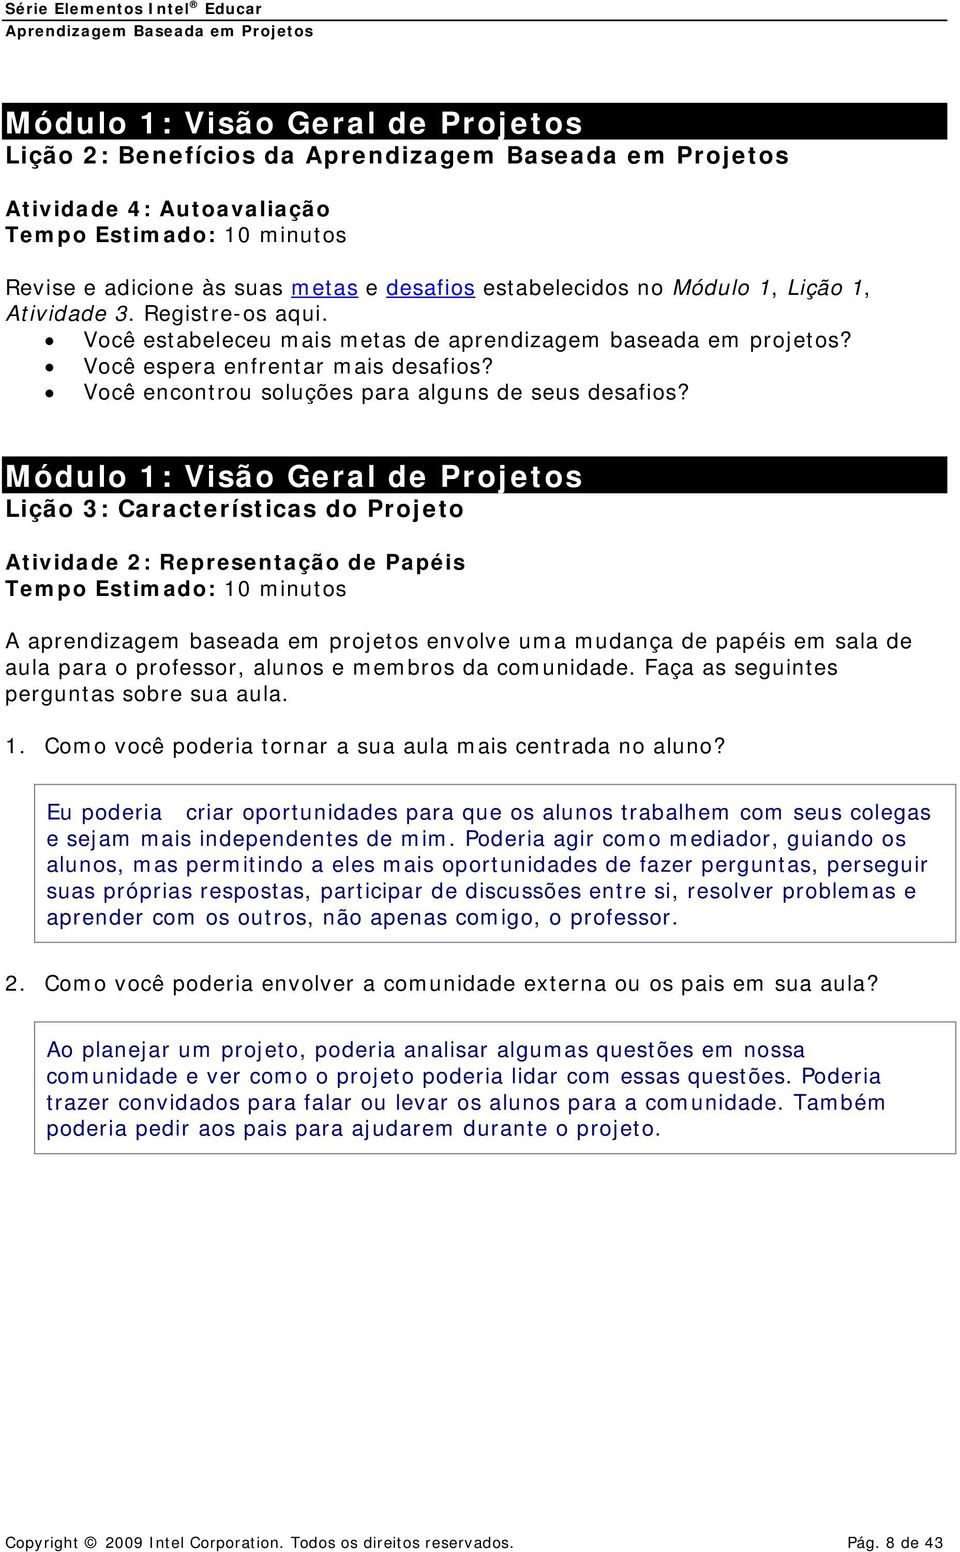 Módulo 1: Visão Geral de Projetos Lição 3: Características do Projeto Atividade 2: Representação de Papéis Tempo Estimado: 10 minutos A aprendizagem baseada em projetos envolve uma mudança de papéis